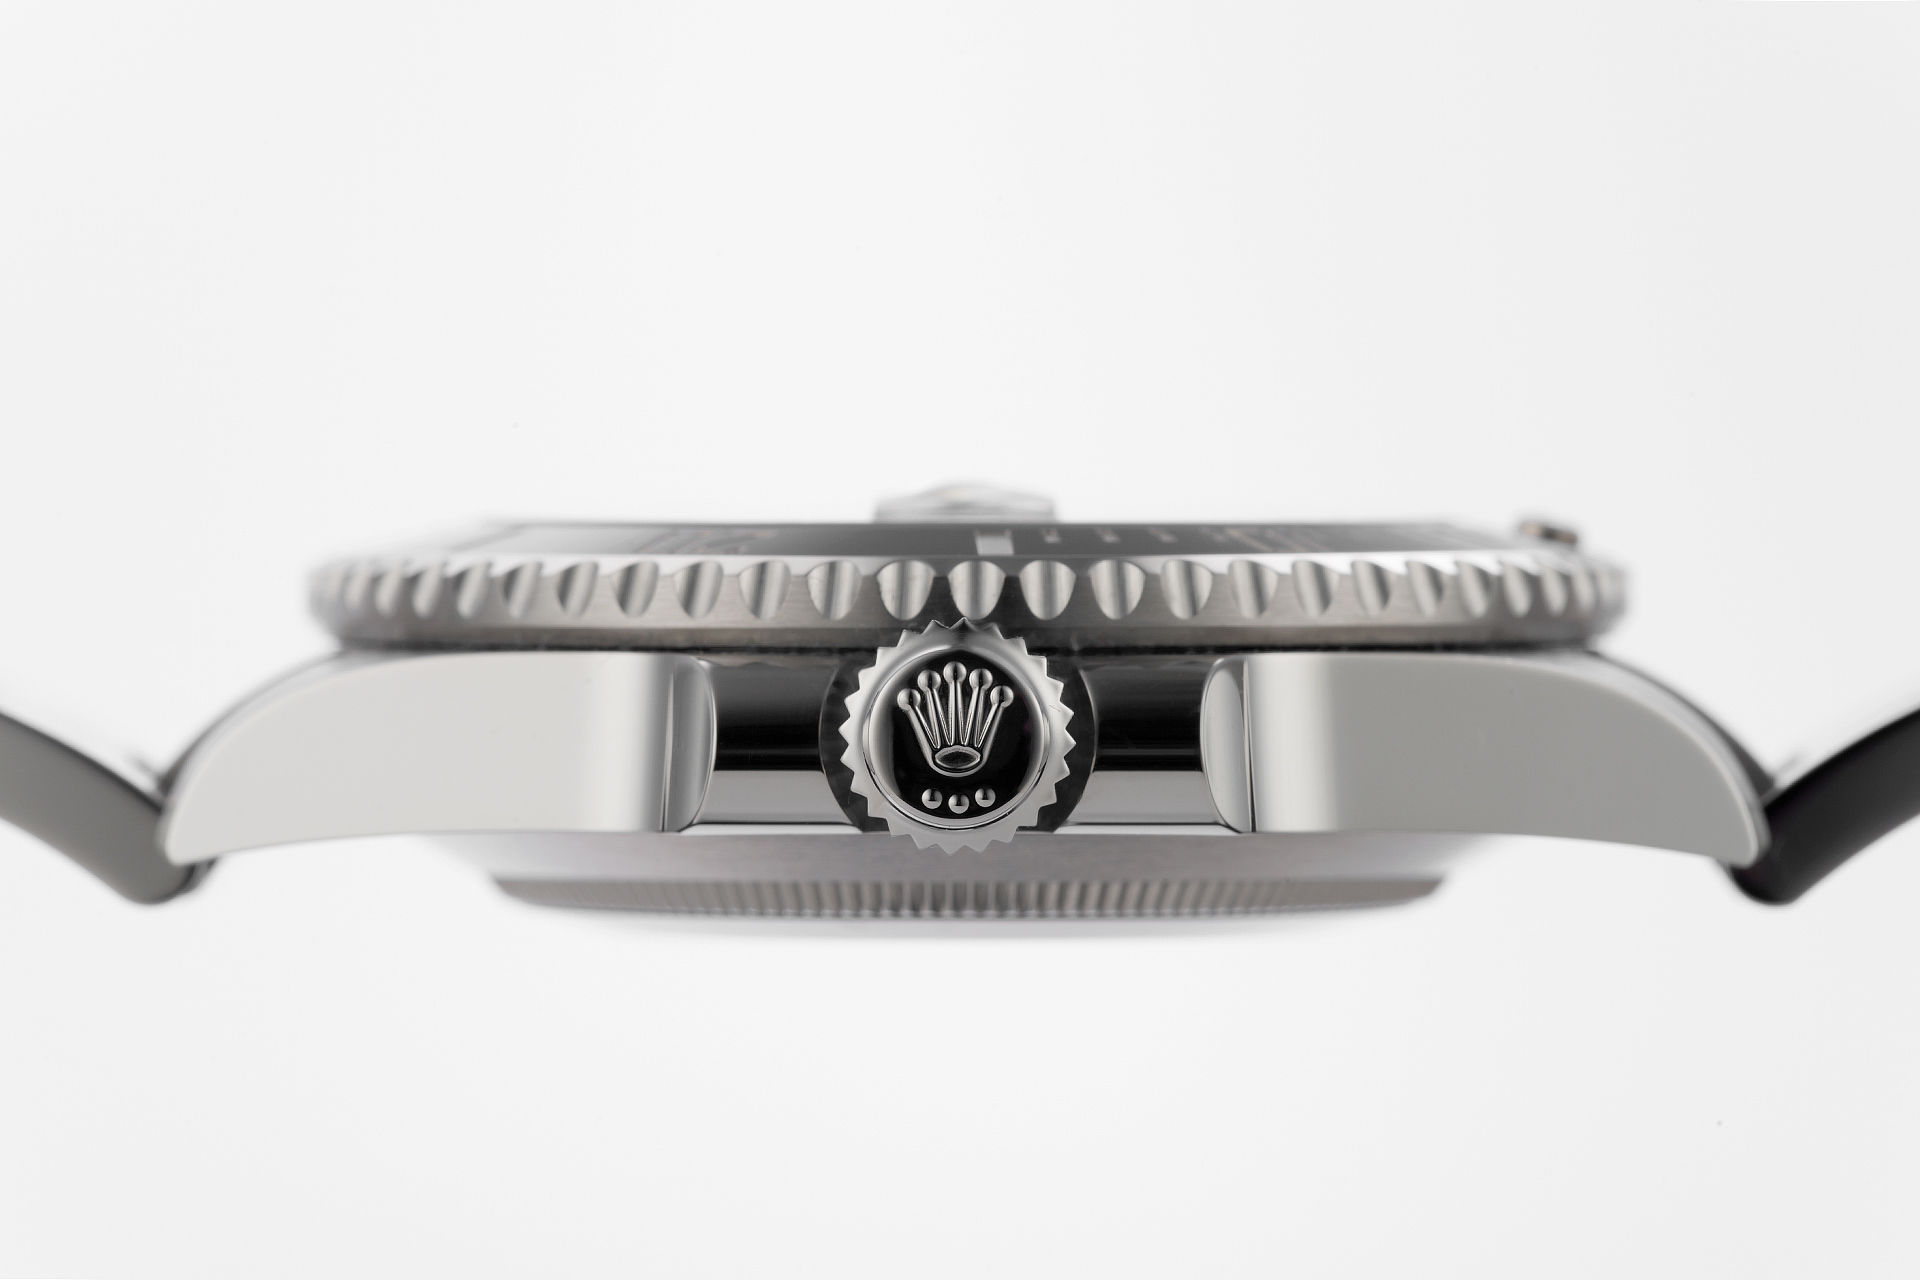 ref 116610LN | Brand New 5 Year Rolex Warranty | Rolex Submariner Date